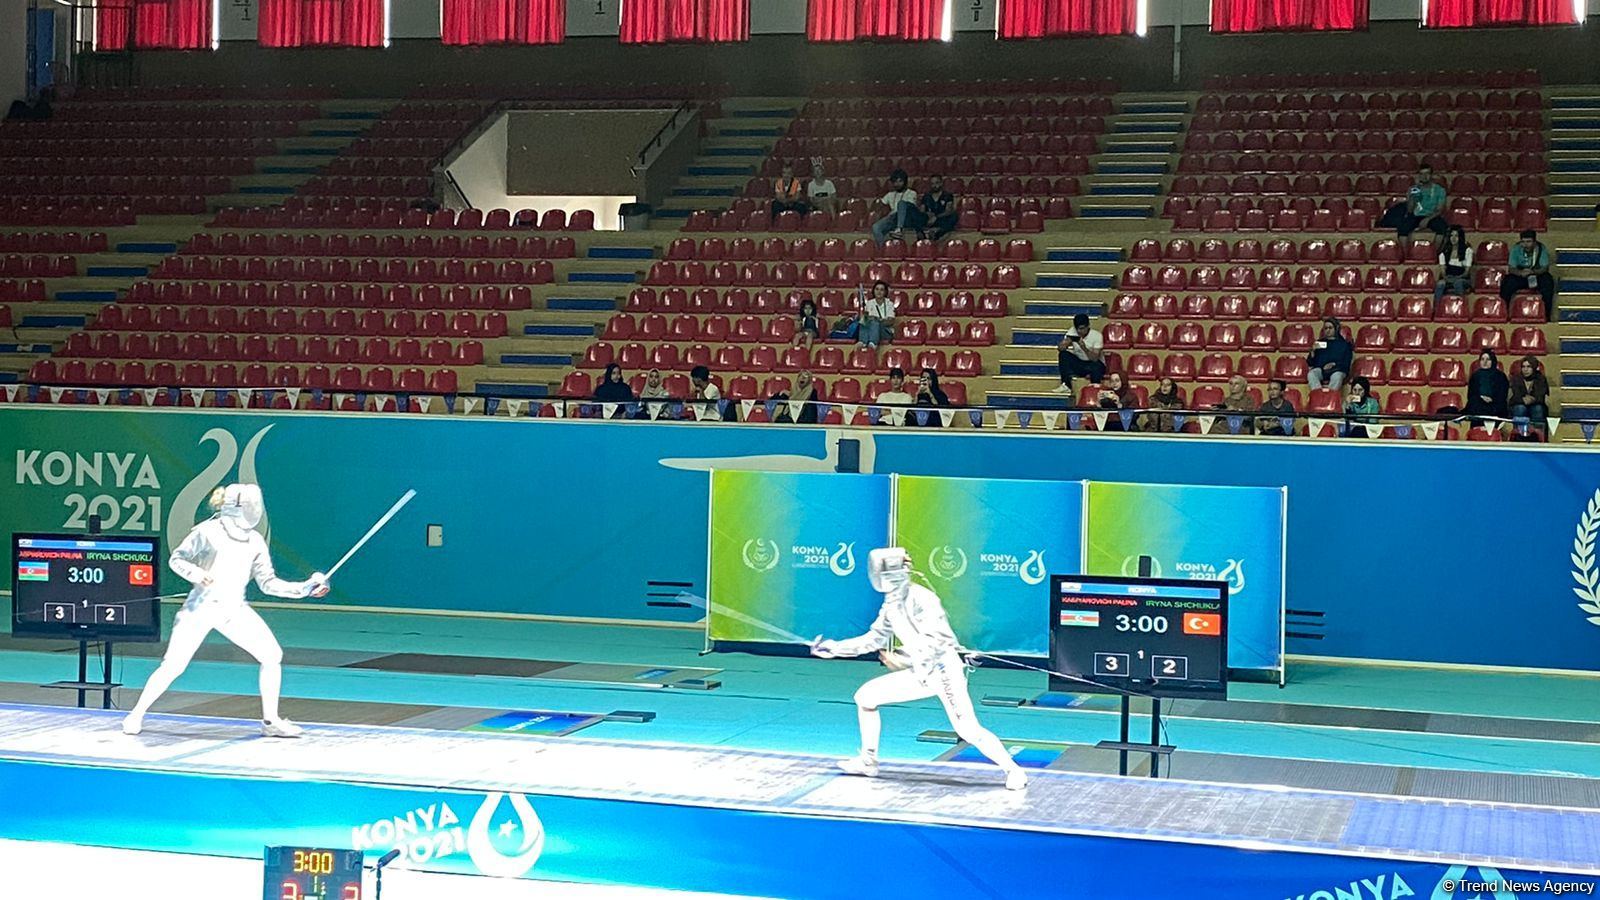 Azerbaijani saber fencing athlete wins silver medal at V Islamic Solidarity Games (PHOTO)